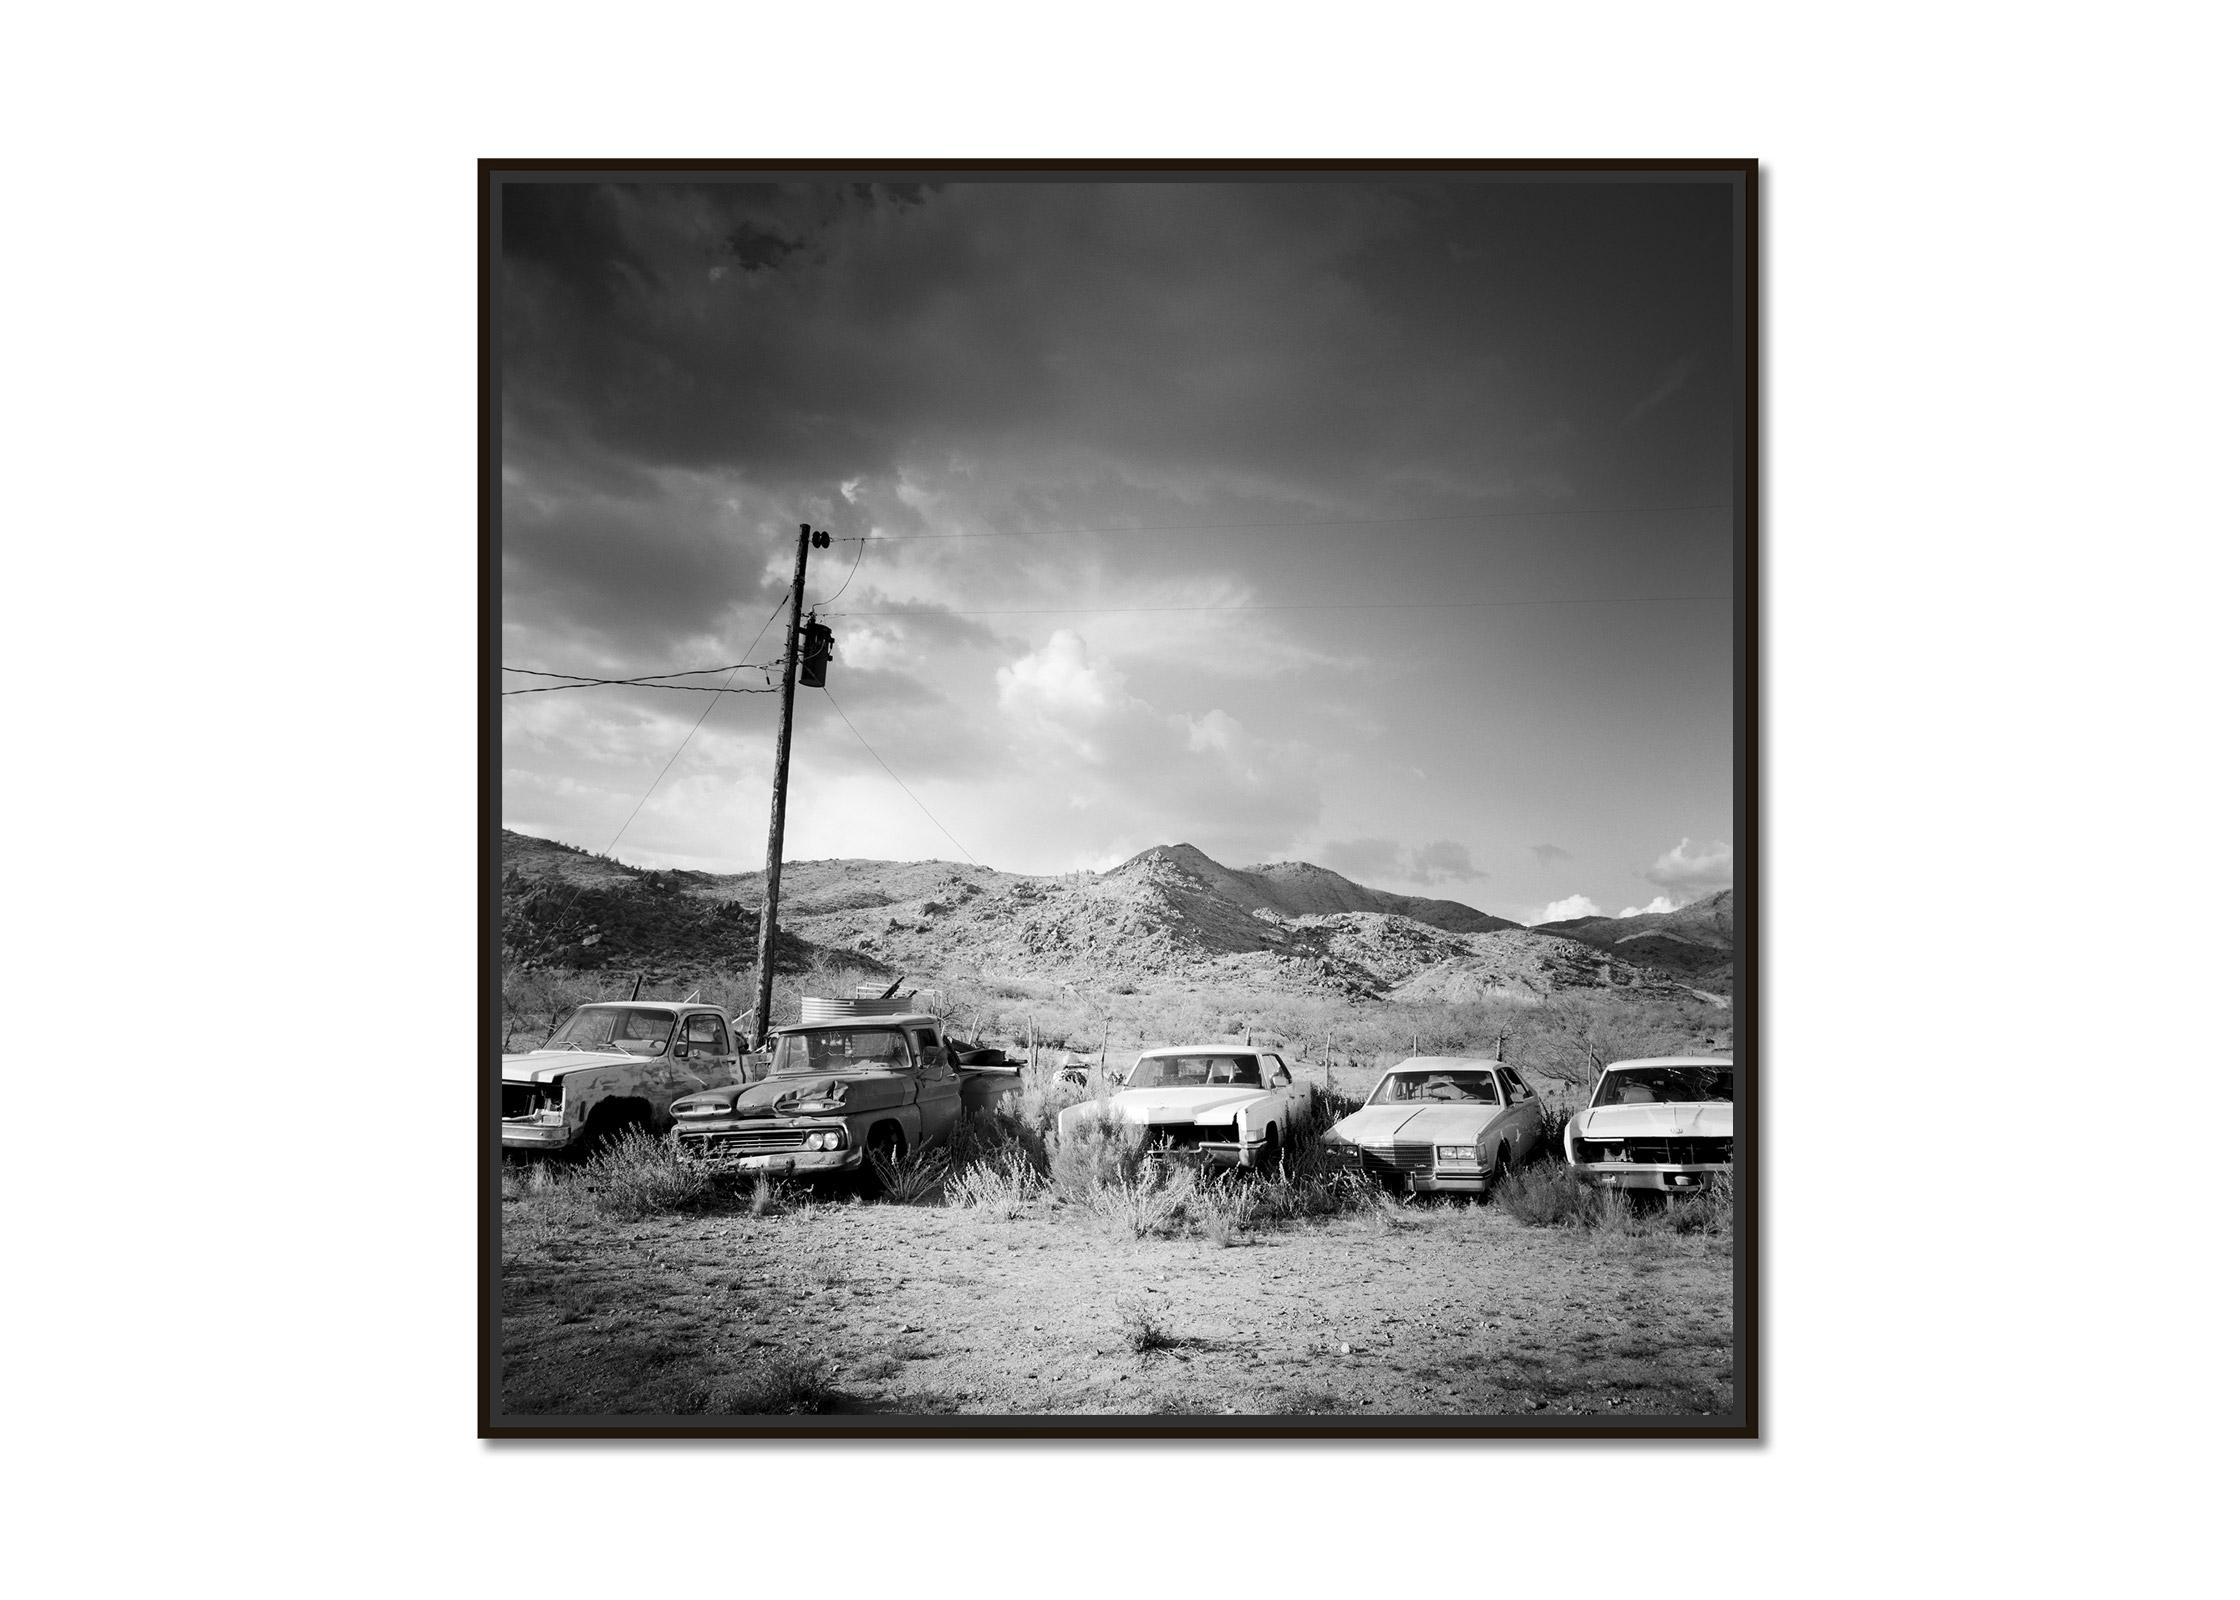 Junkyard, Wüste, Route 66, Arizona, USA, Schwarz-Weiß-Fotografie, Landschaft – Photograph von Gerald Berghammer